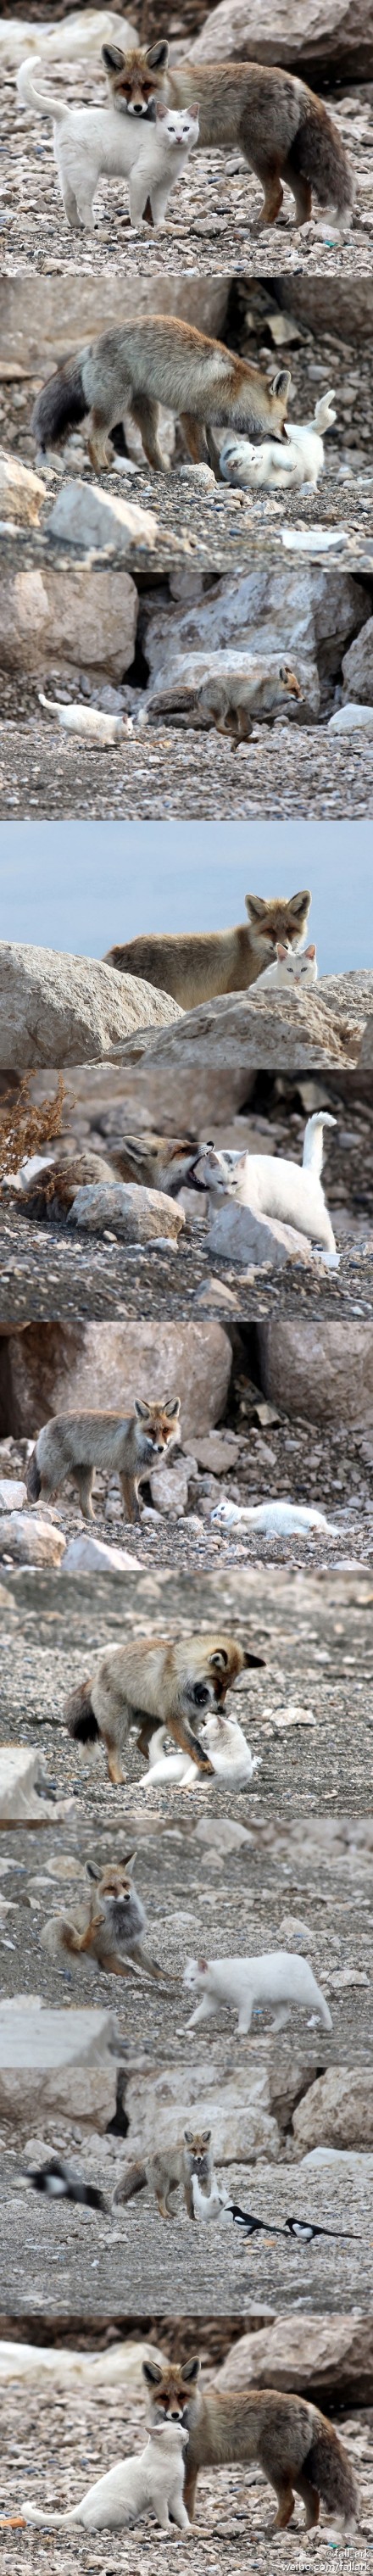 土耳其凡湖边的一只凡猫和一只狐狸,因为渔民们常丢鱼给它们一起吃而